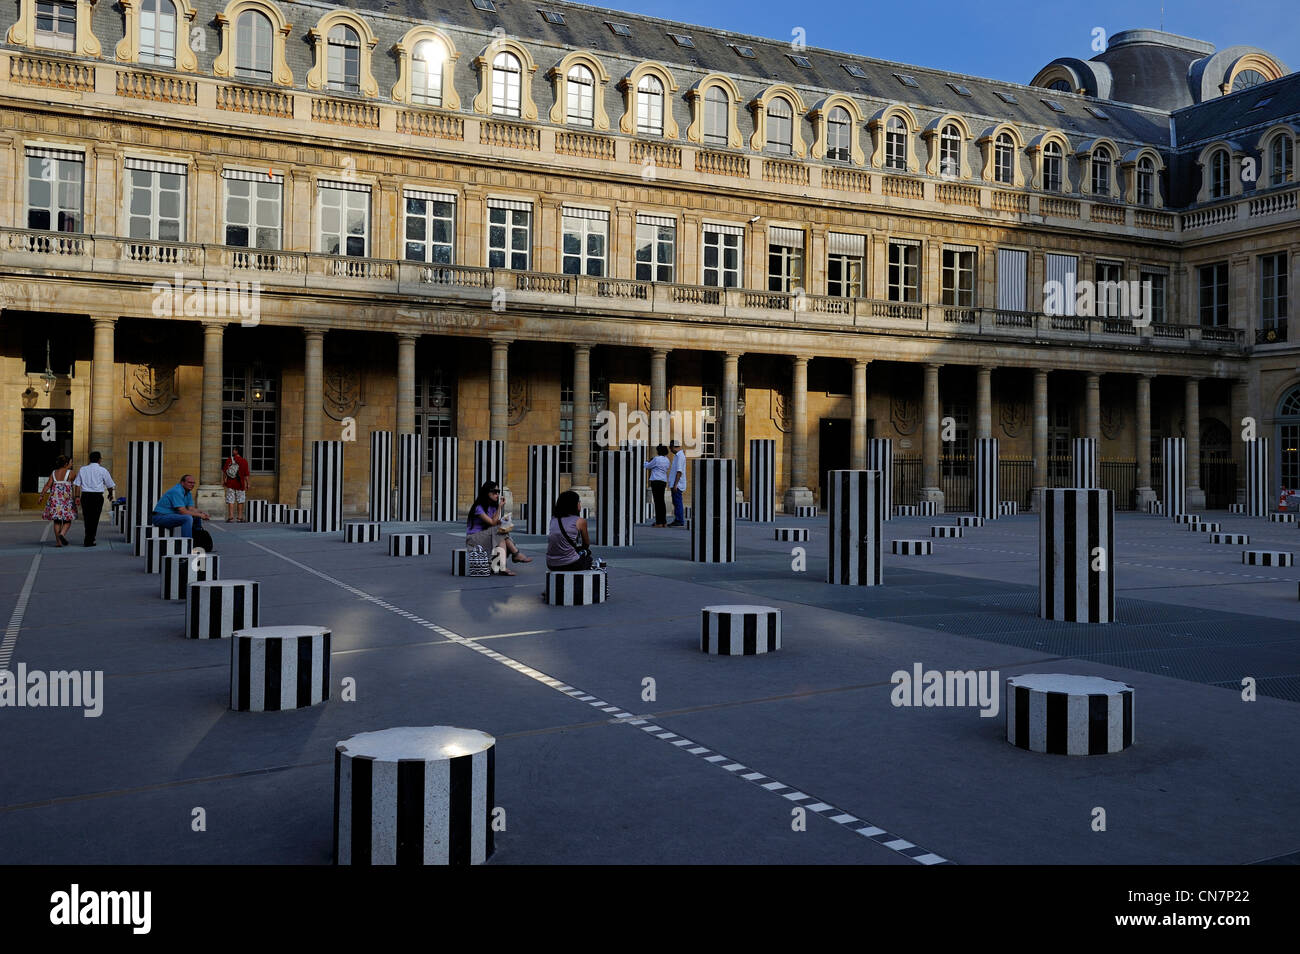 France, Paris, Palais Royal, Buren column Stock Photo